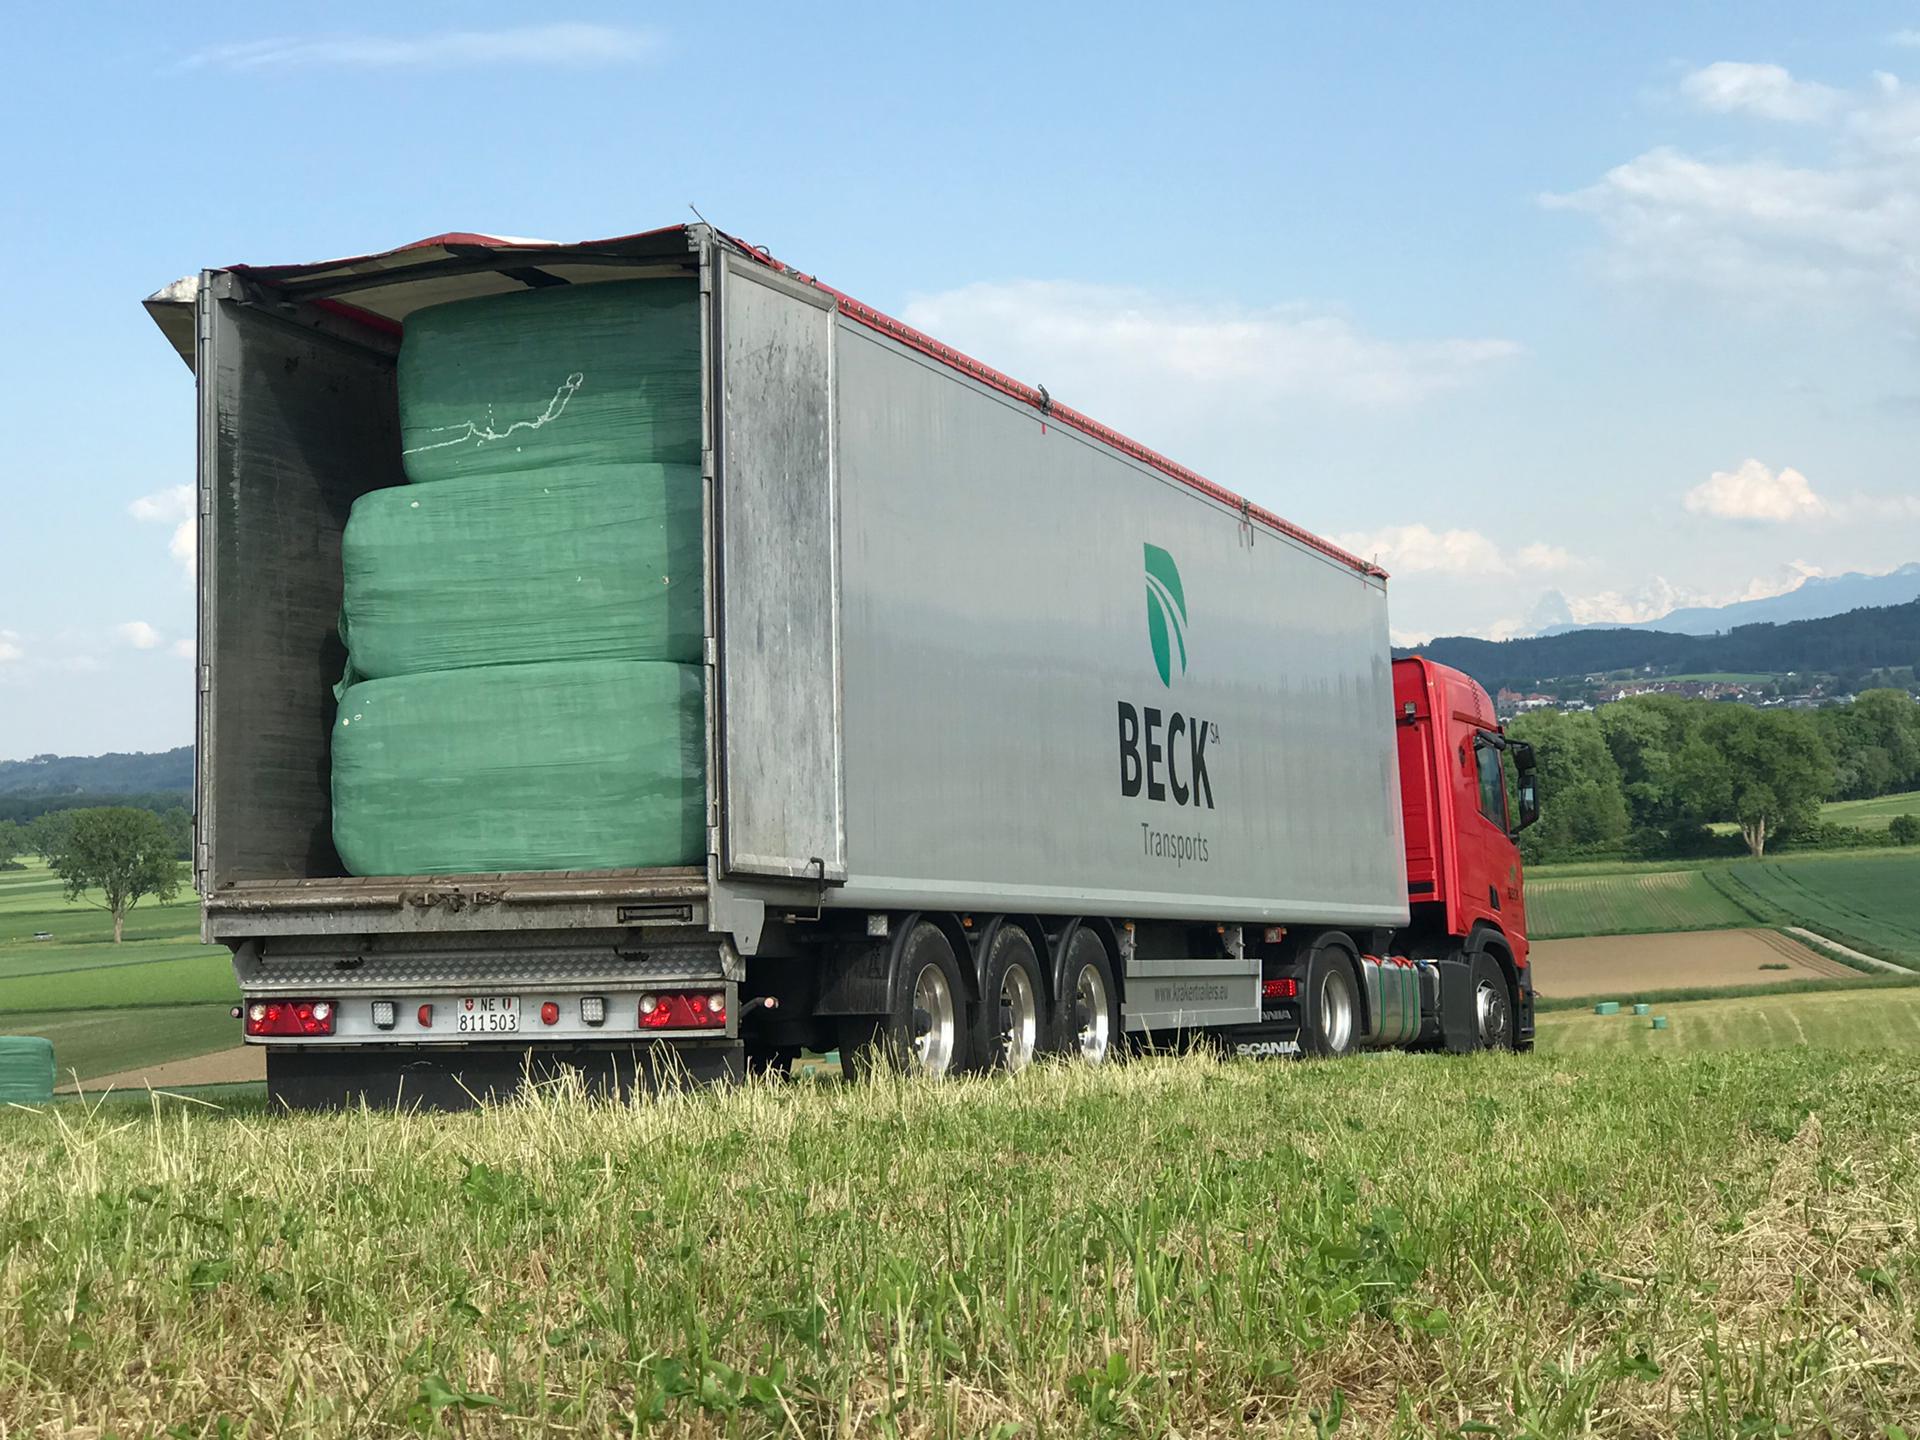 Camion Beck transports SA